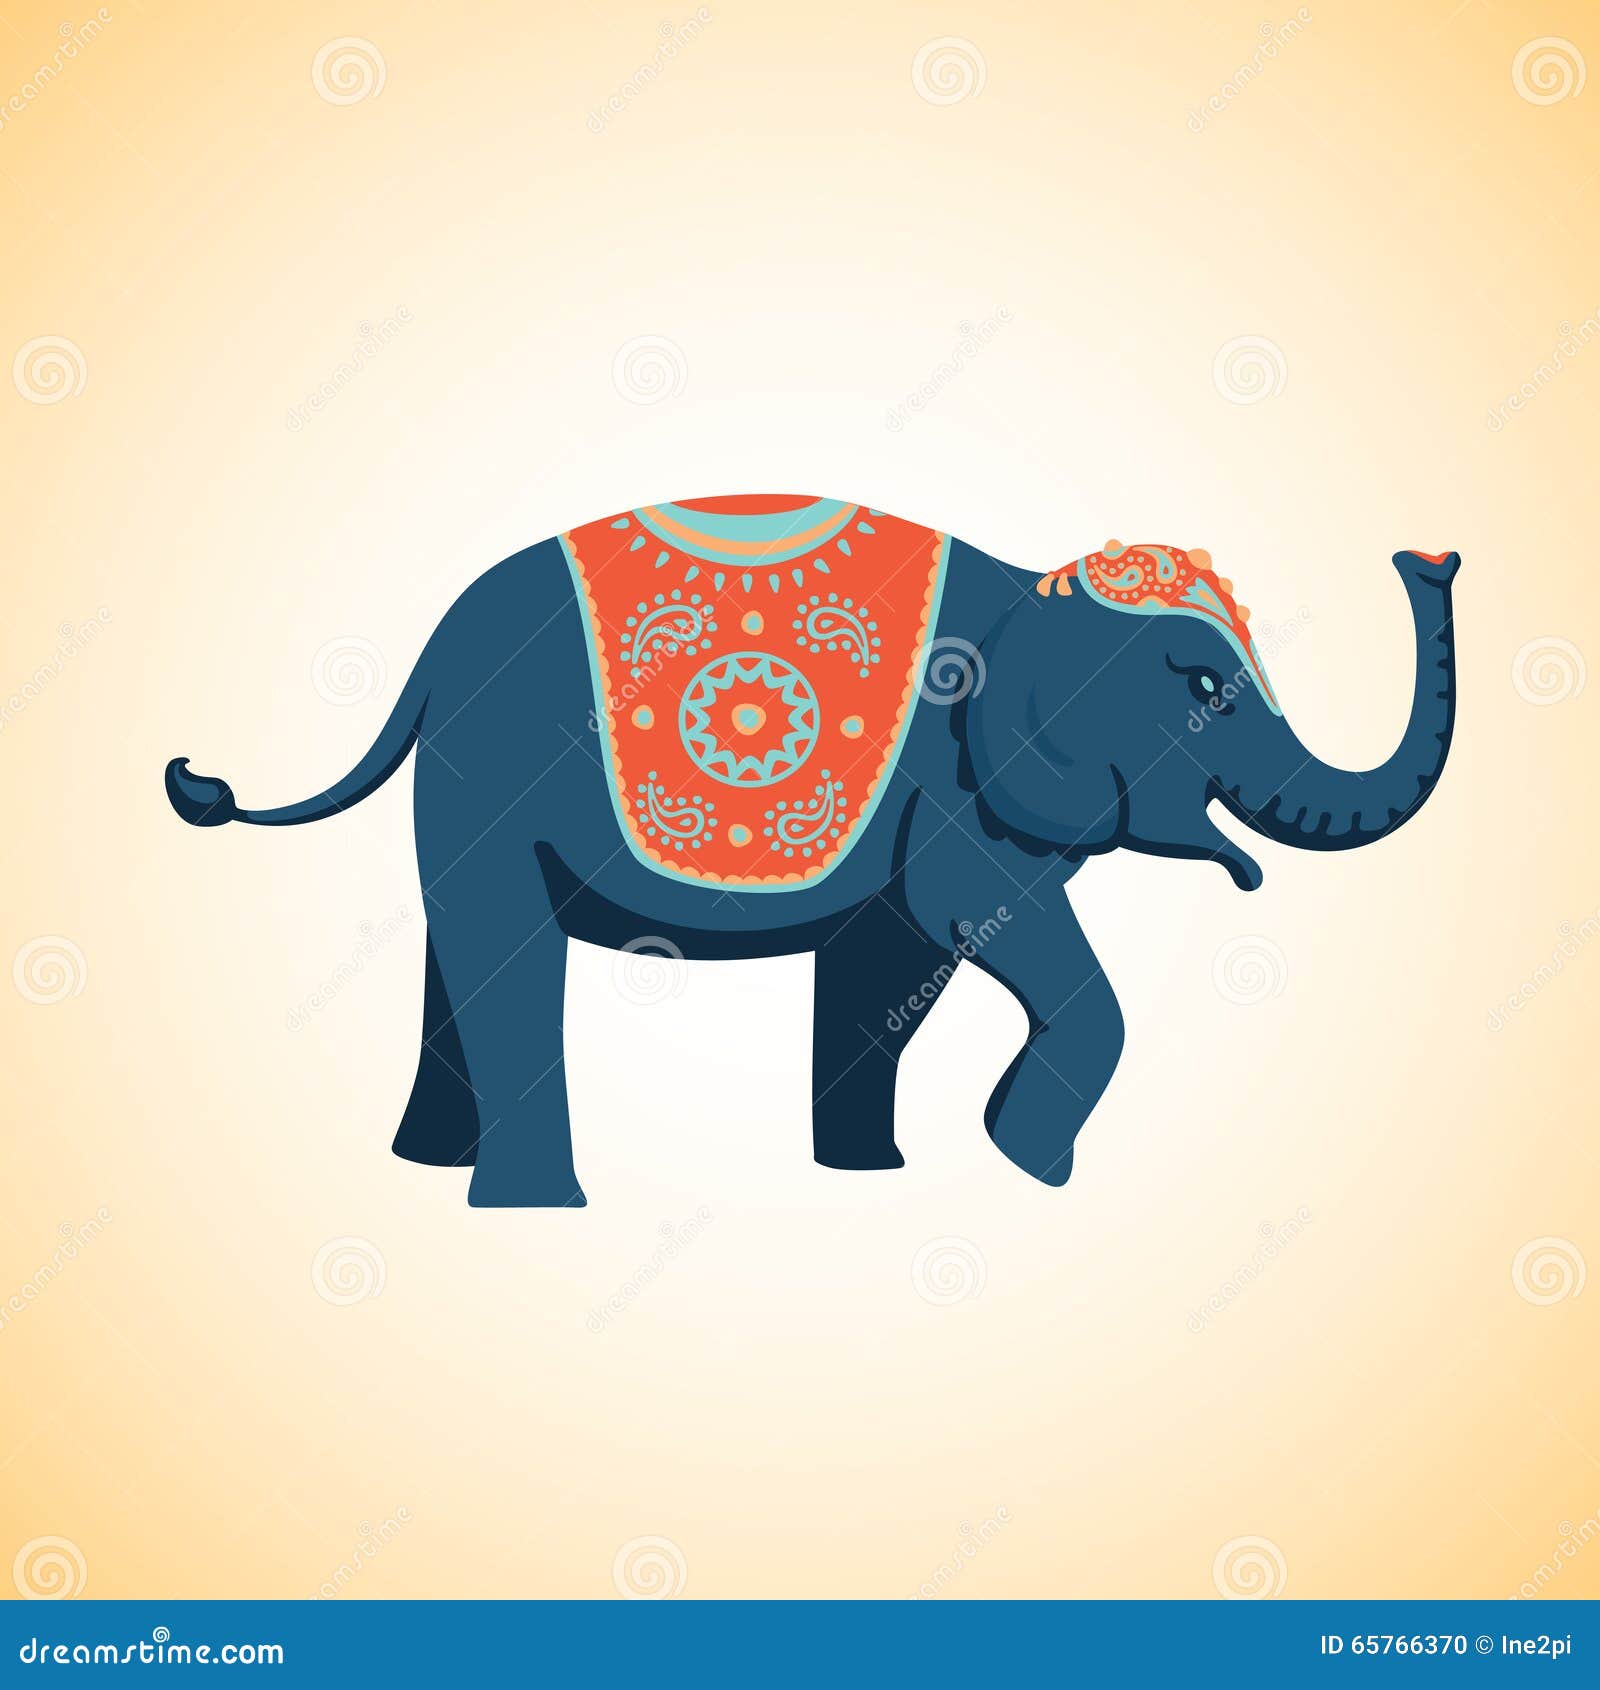 Elephant on Pinterest